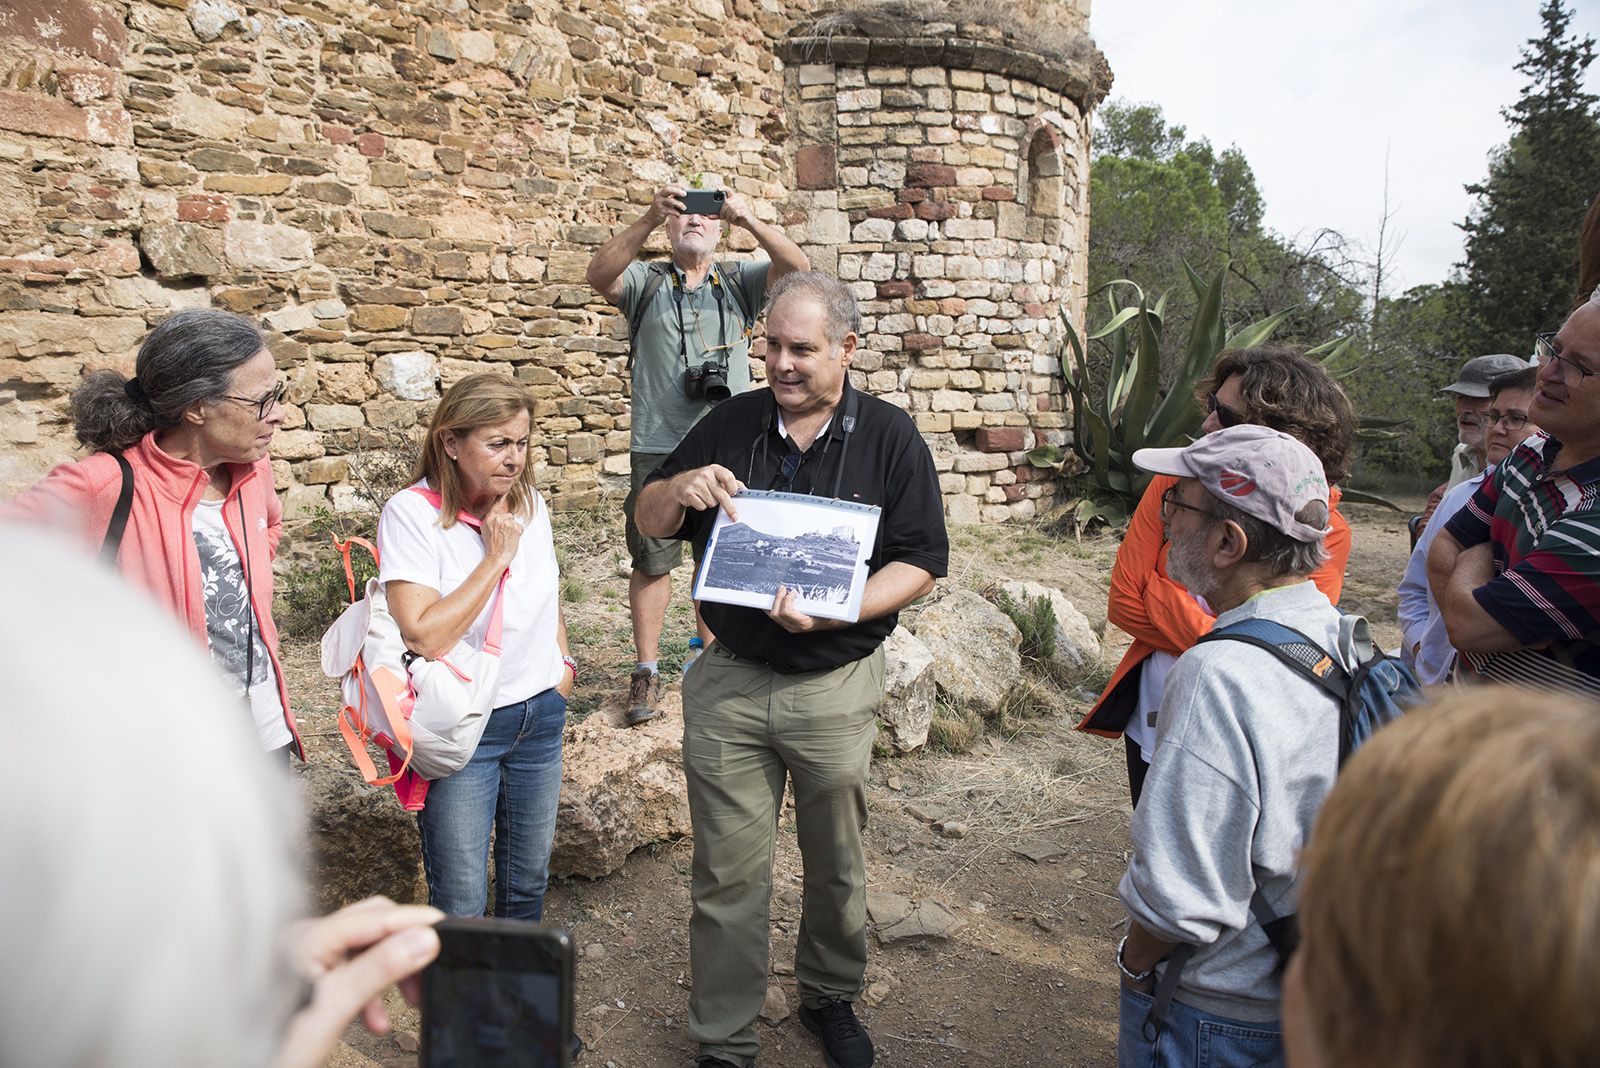 Visita comentada per el President de l'EMD de Valldoreix el Sr. Juanjo Cortés a l'Ermita de la Salut. Foto: Bernat Millet.